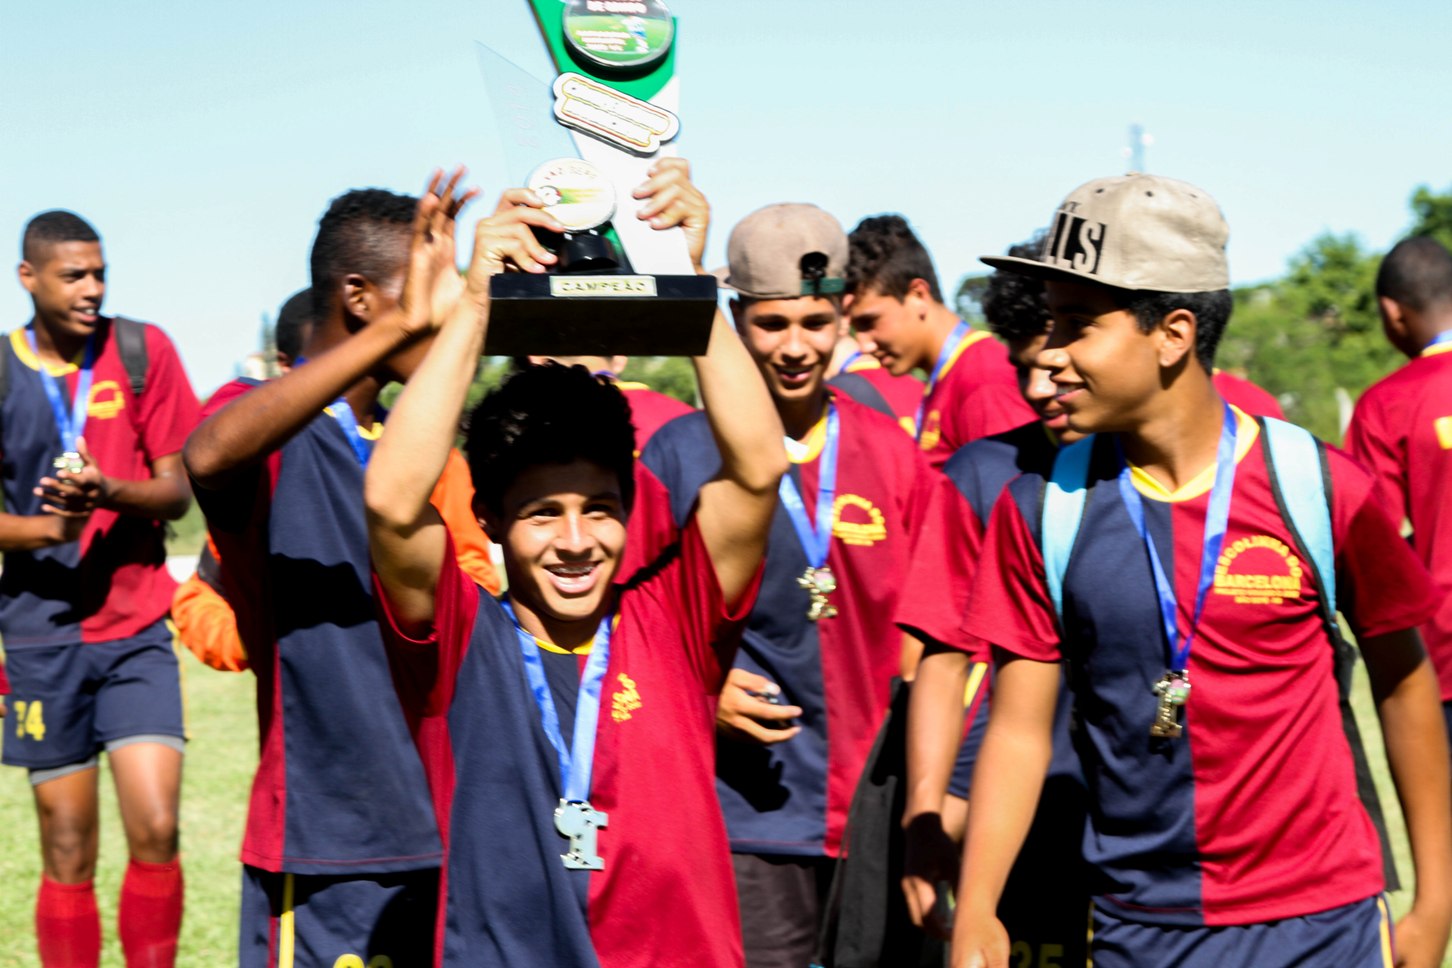 Futebol de campo: Barcelona conquista o título do campeonato Infantil